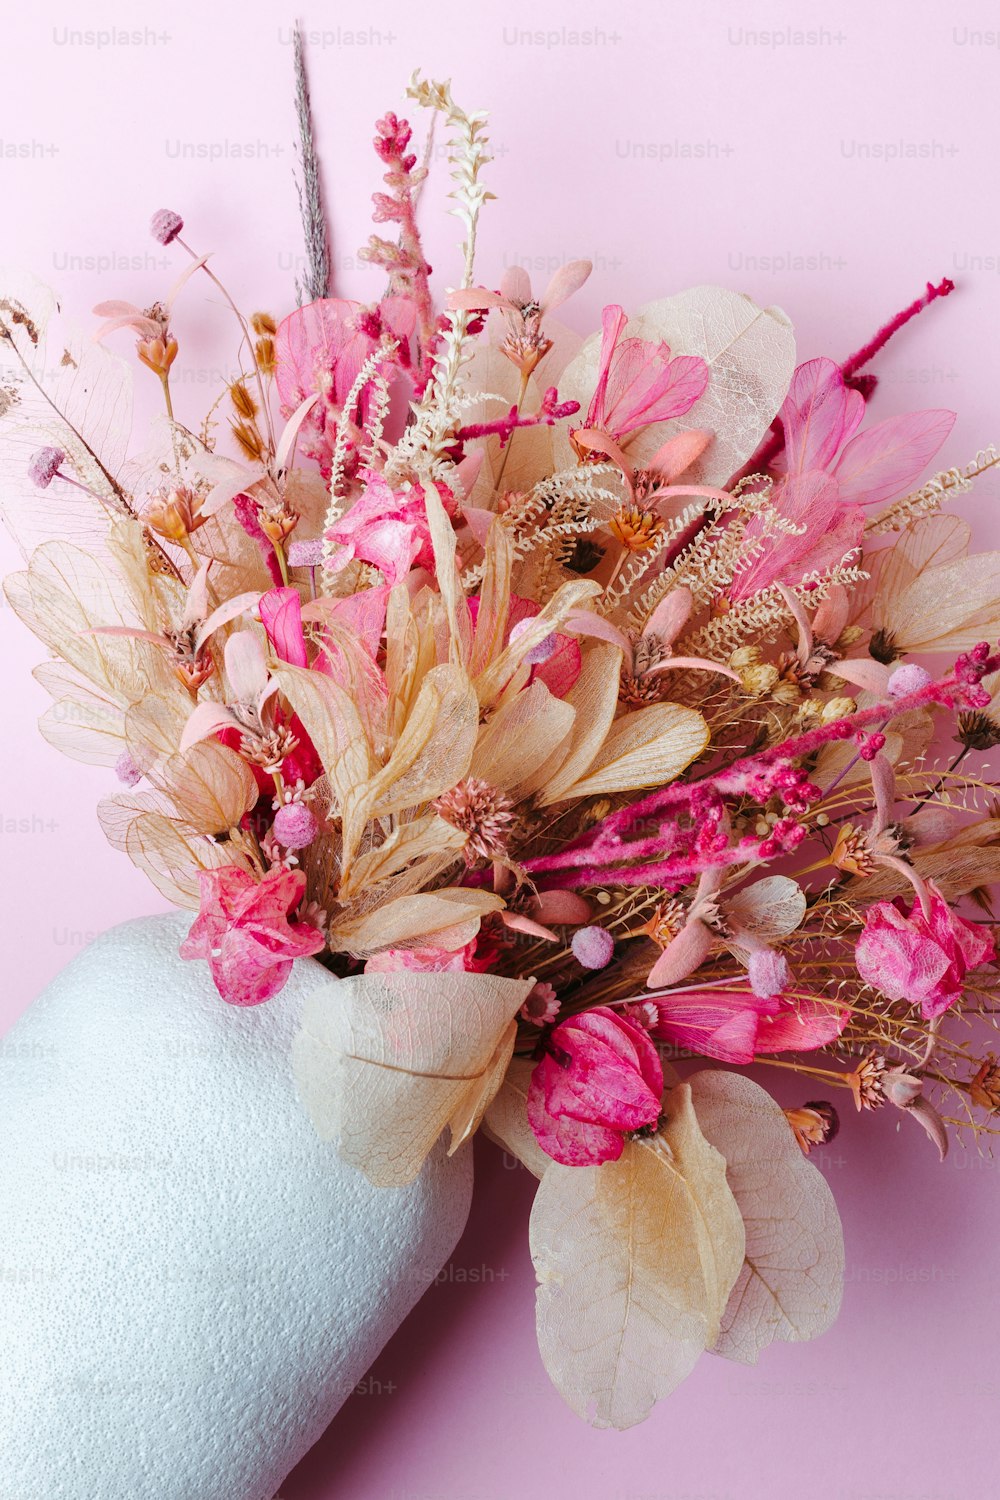 una mano che tiene un mazzo di fiori su uno sfondo rosa